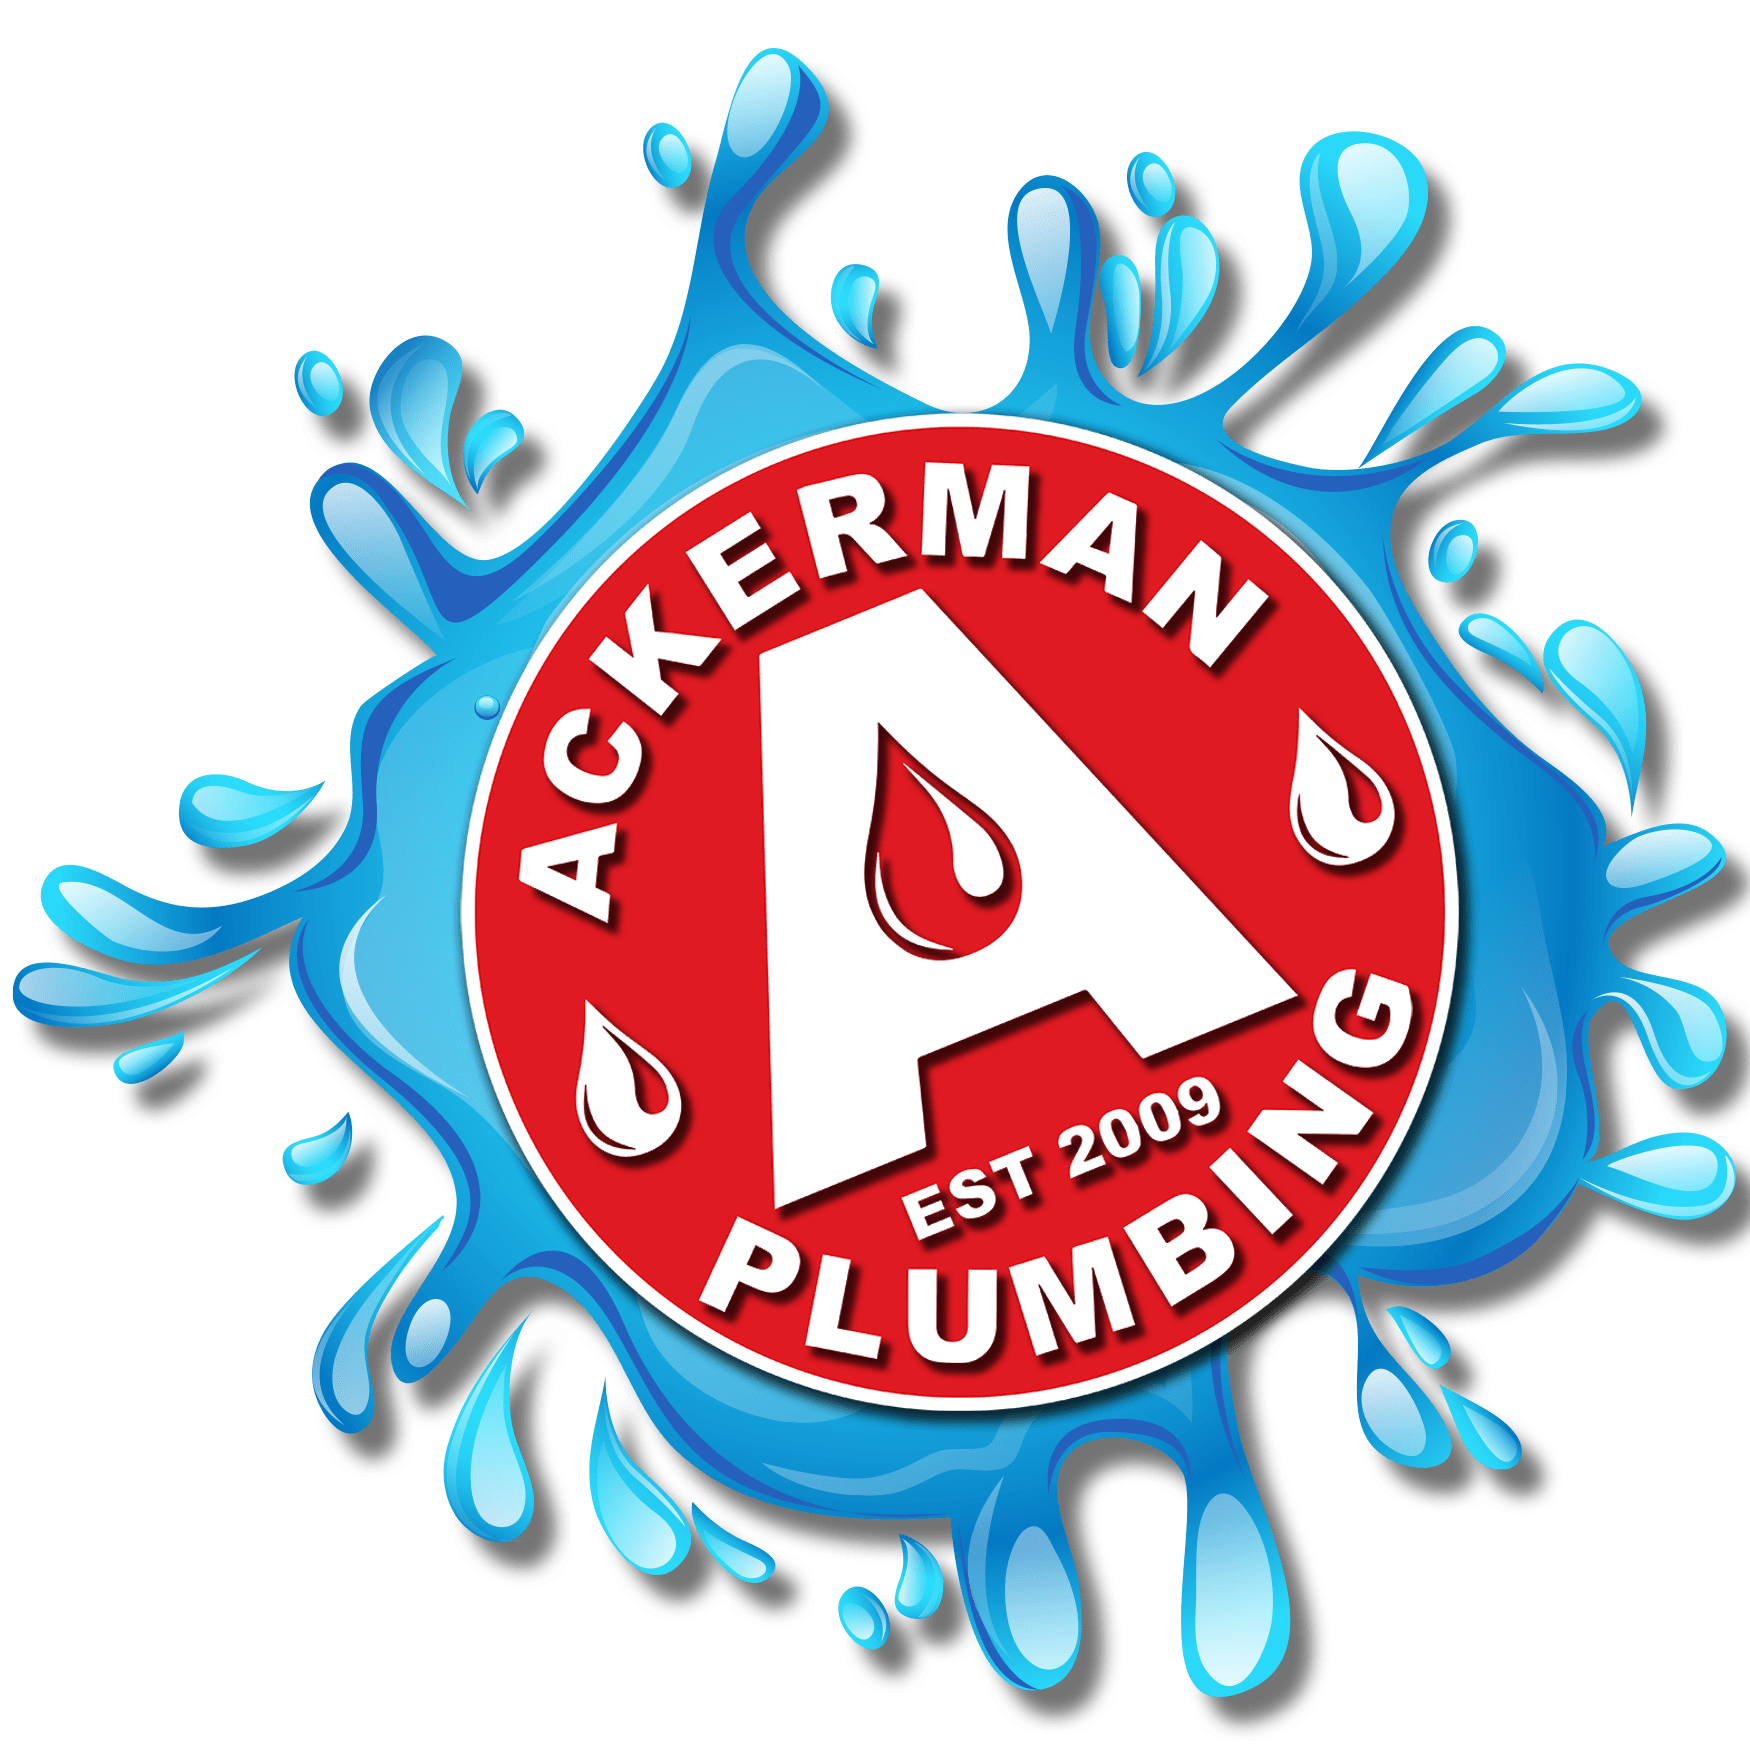 Ackerman Plumbing